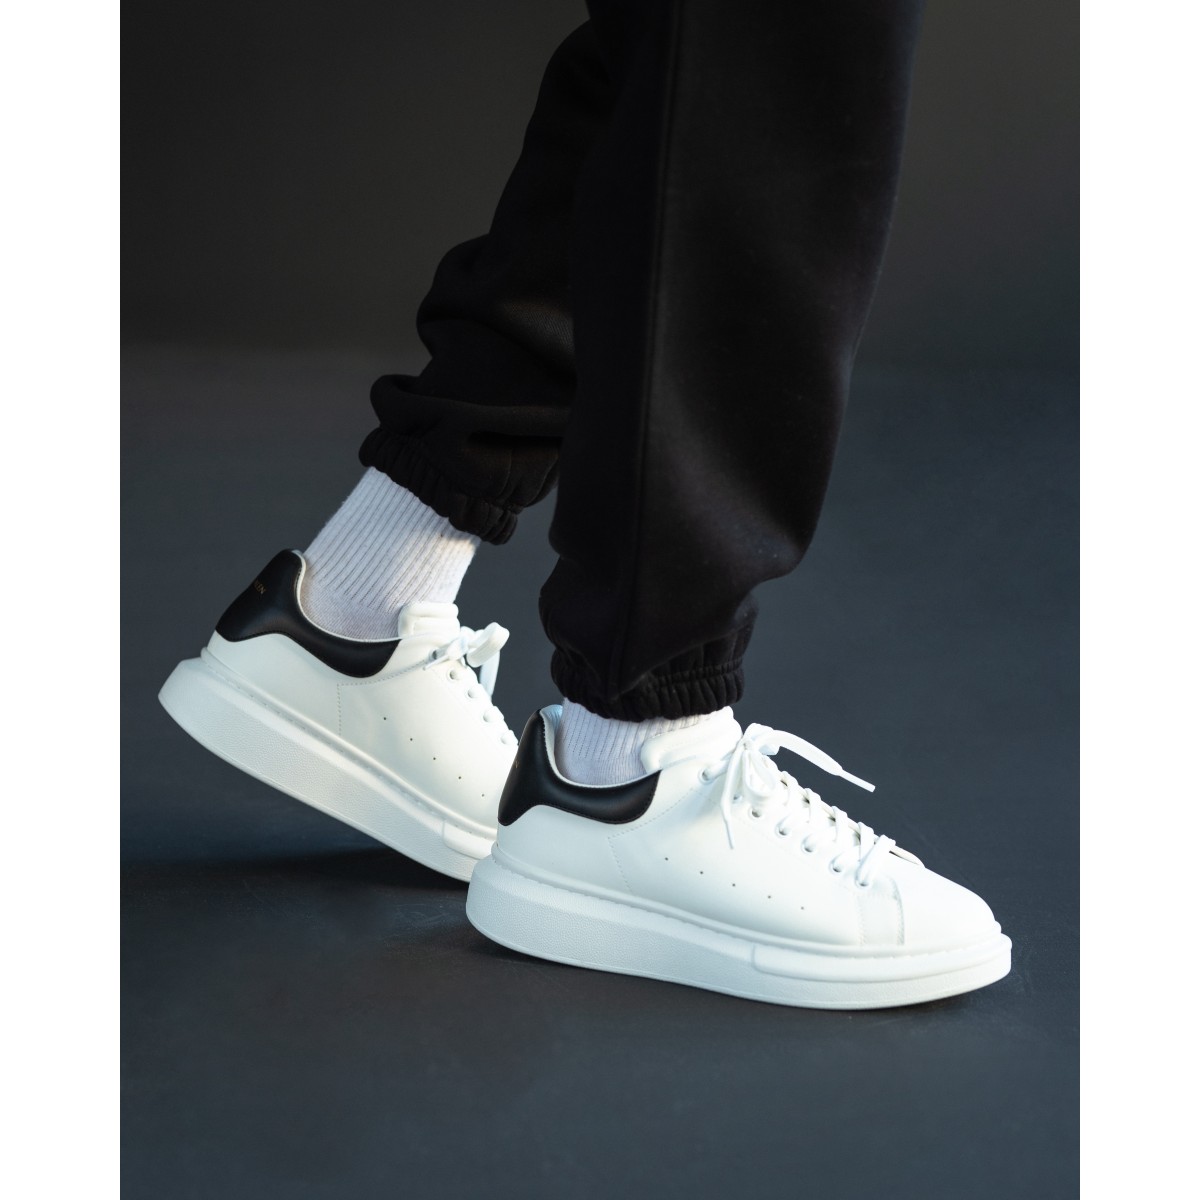 Plateforme Sneakers Basket Blanc-Noir